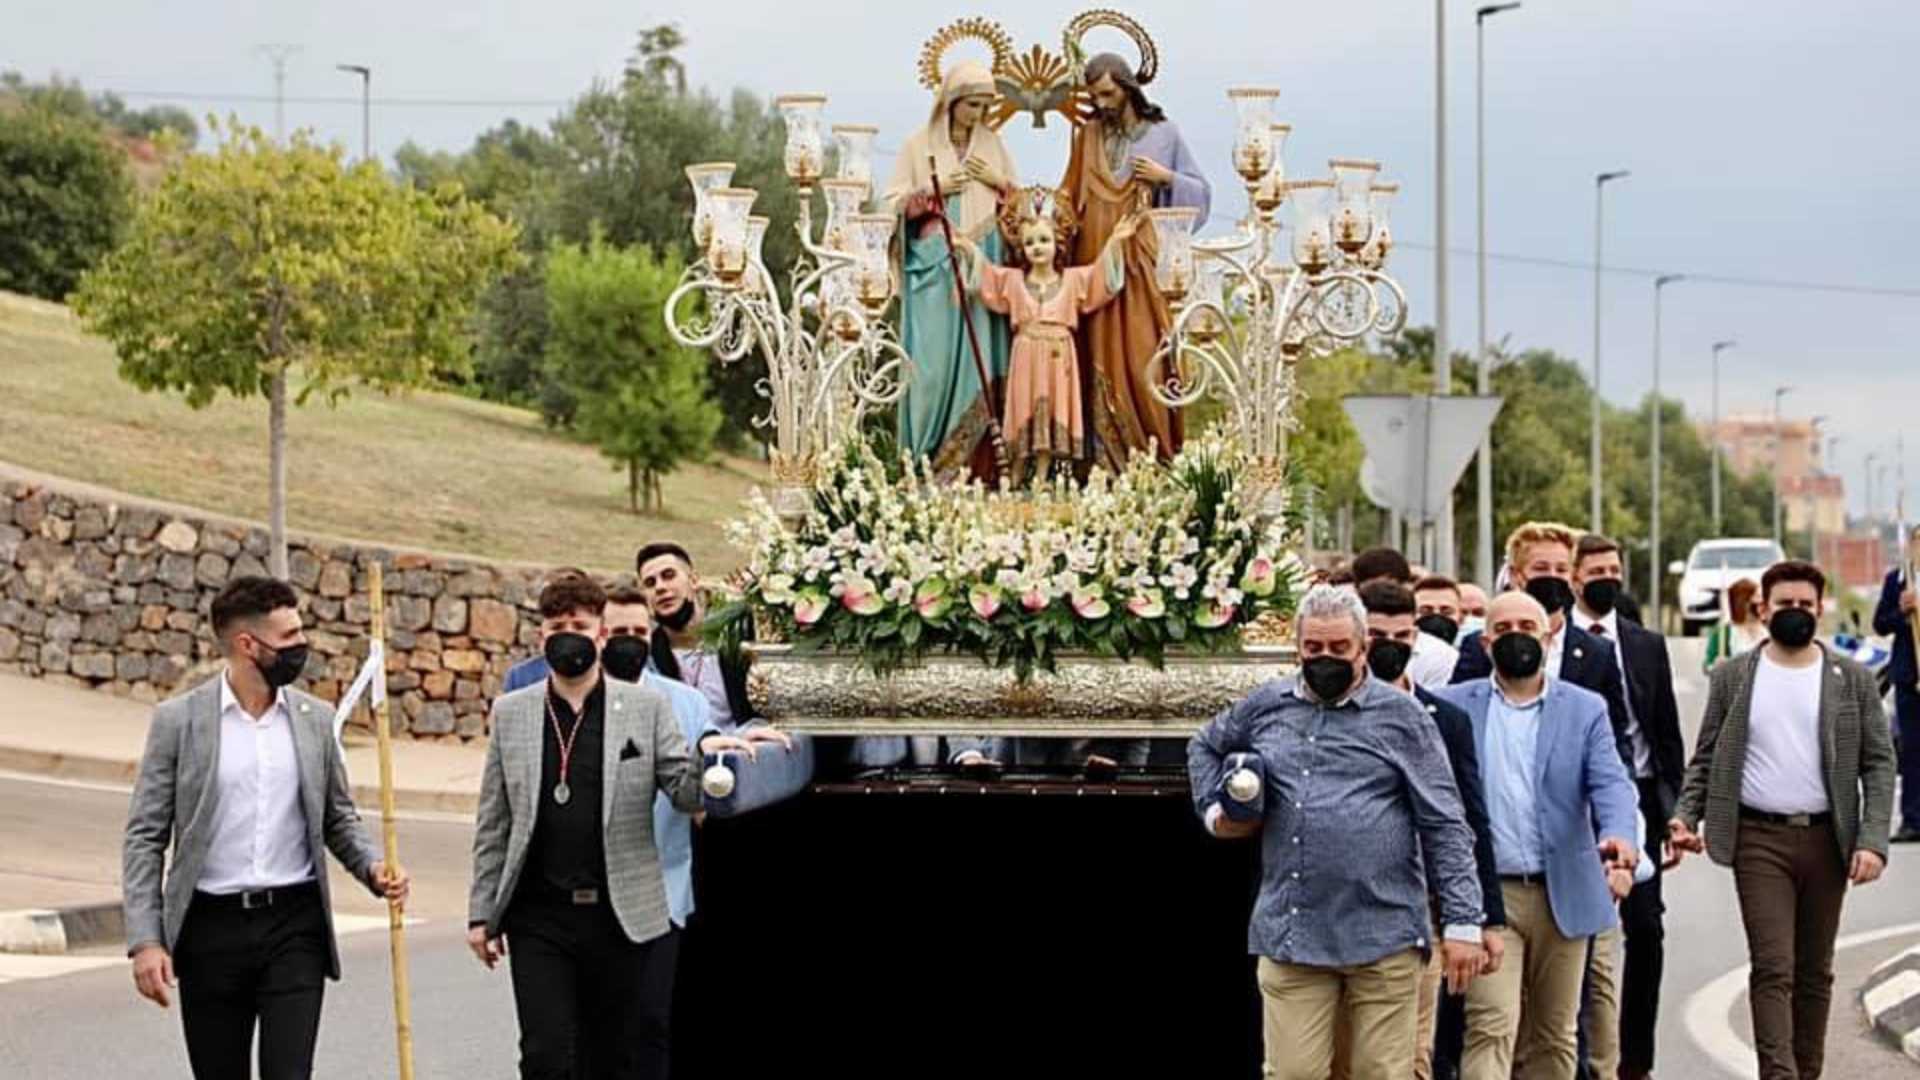 Fiestas Patronales en honor a la Sagrada Familia y Santísimo Cristo de Vall d’Uixó